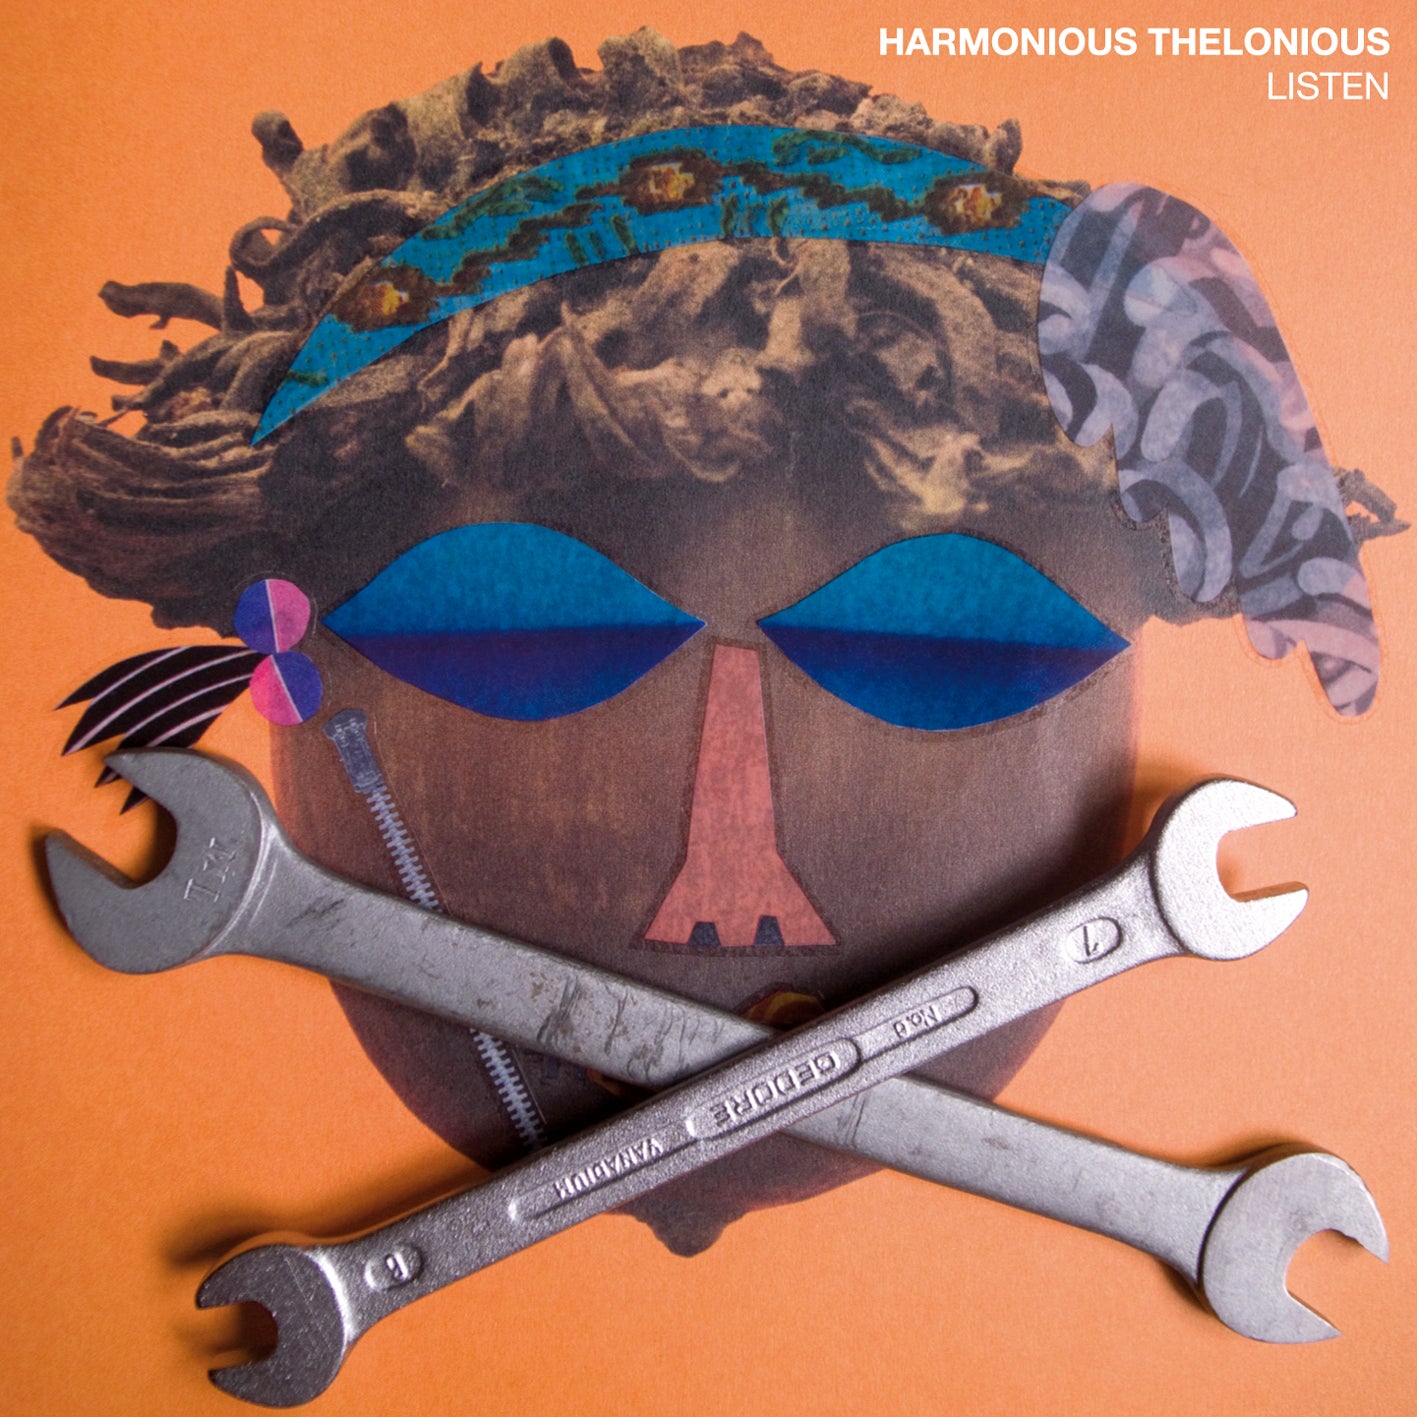 Harmonious Thelonious - Listen